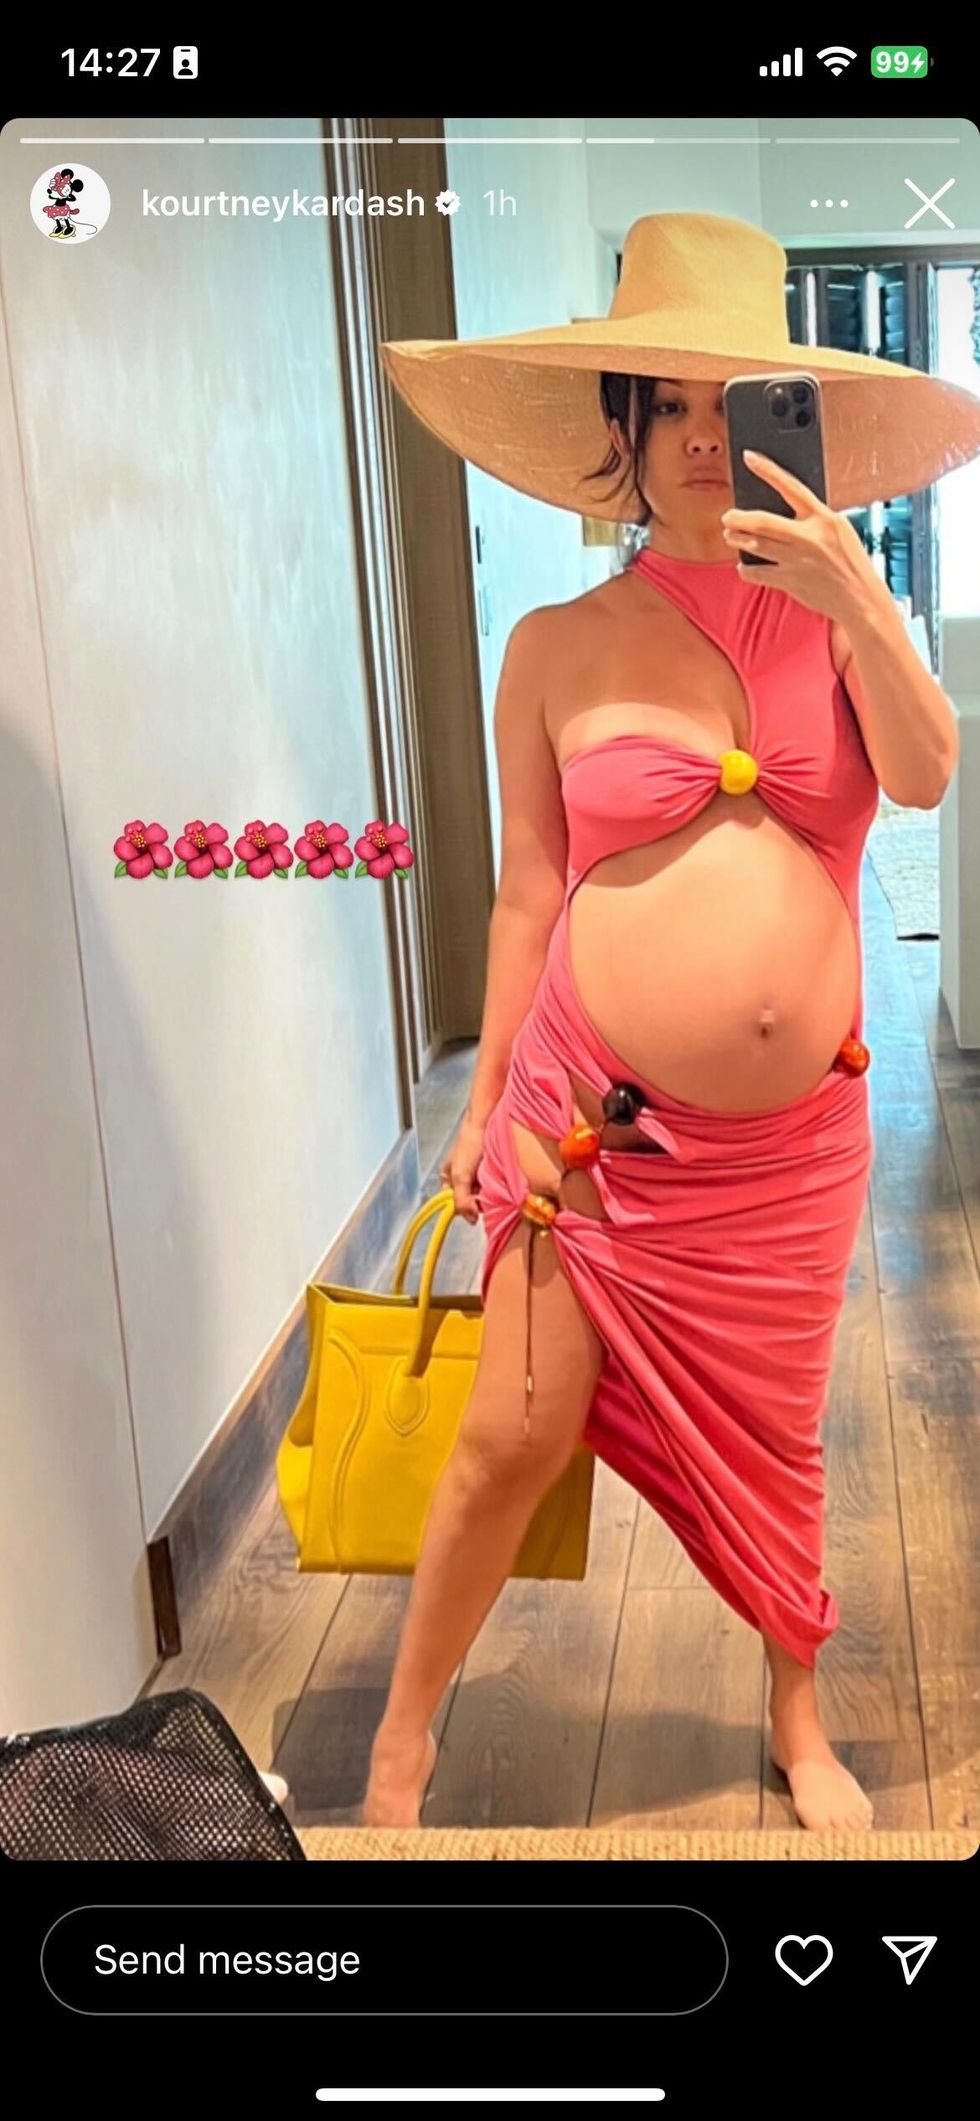 kourtney kardashian in her pink dress